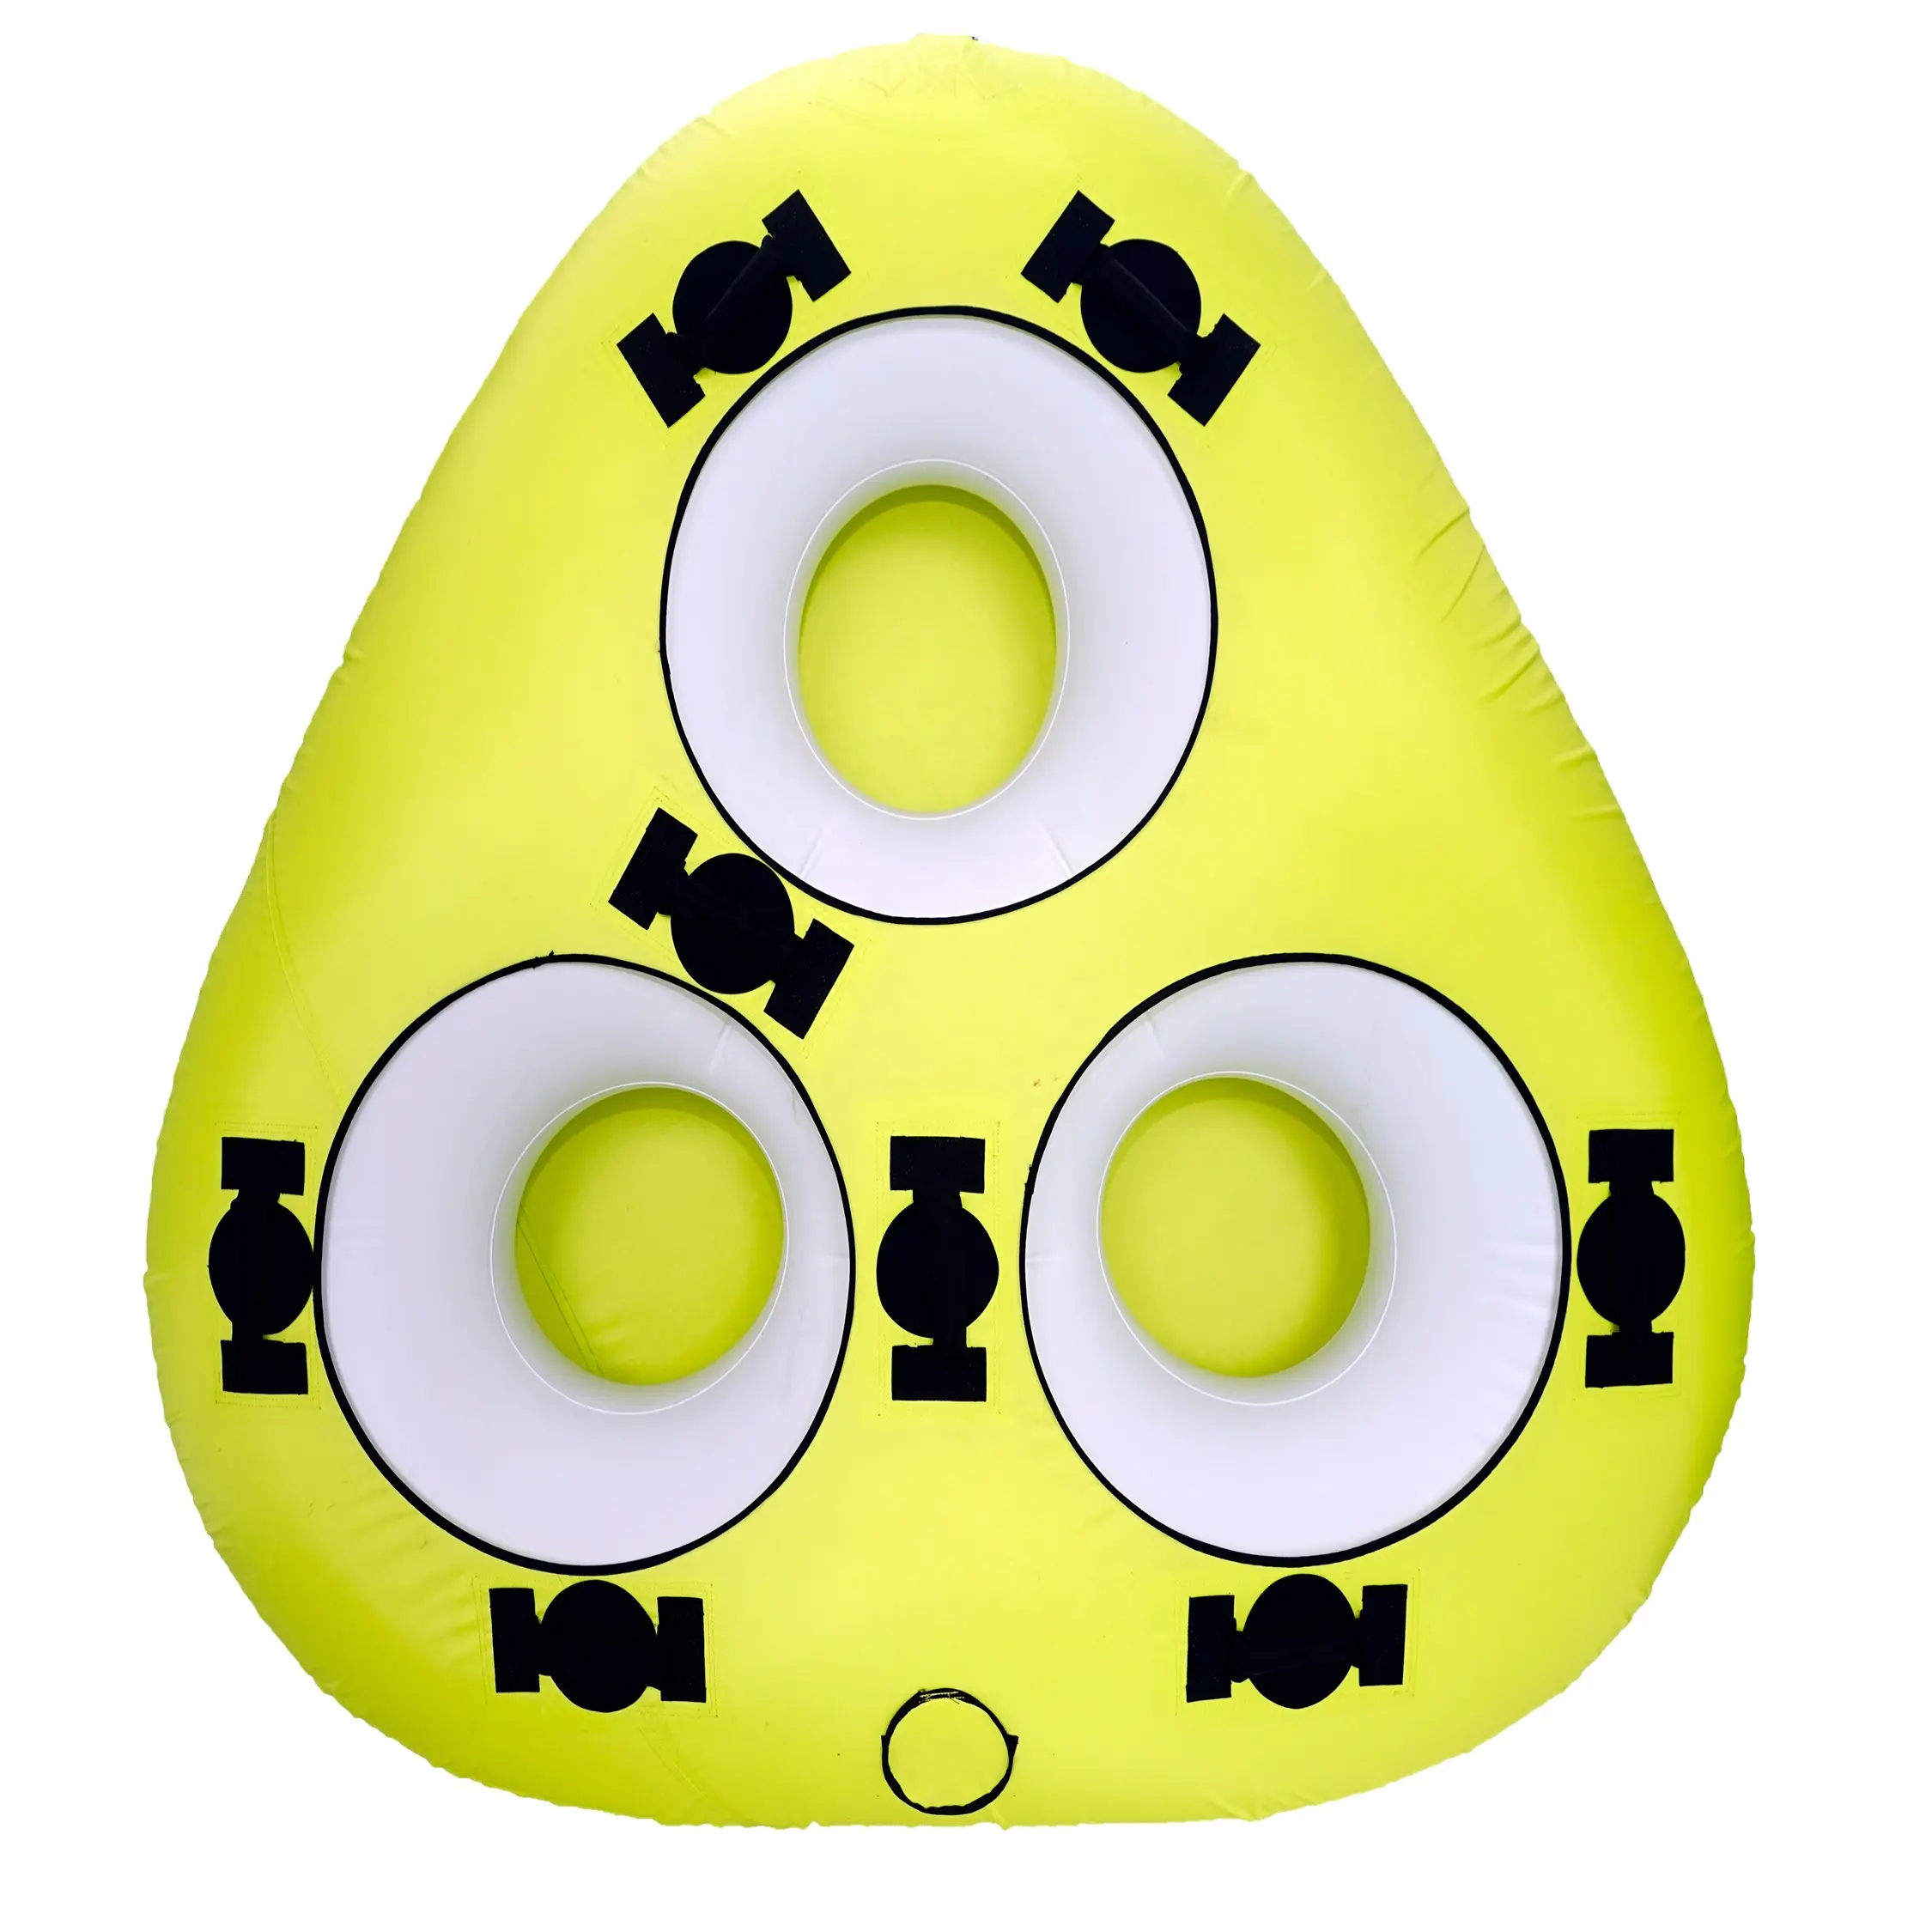 Tube gonflable en PVC étanche de Style moderne pour adulte, résistant, de couleur jaune, extensible et Durable, avec couvercle en Nylon